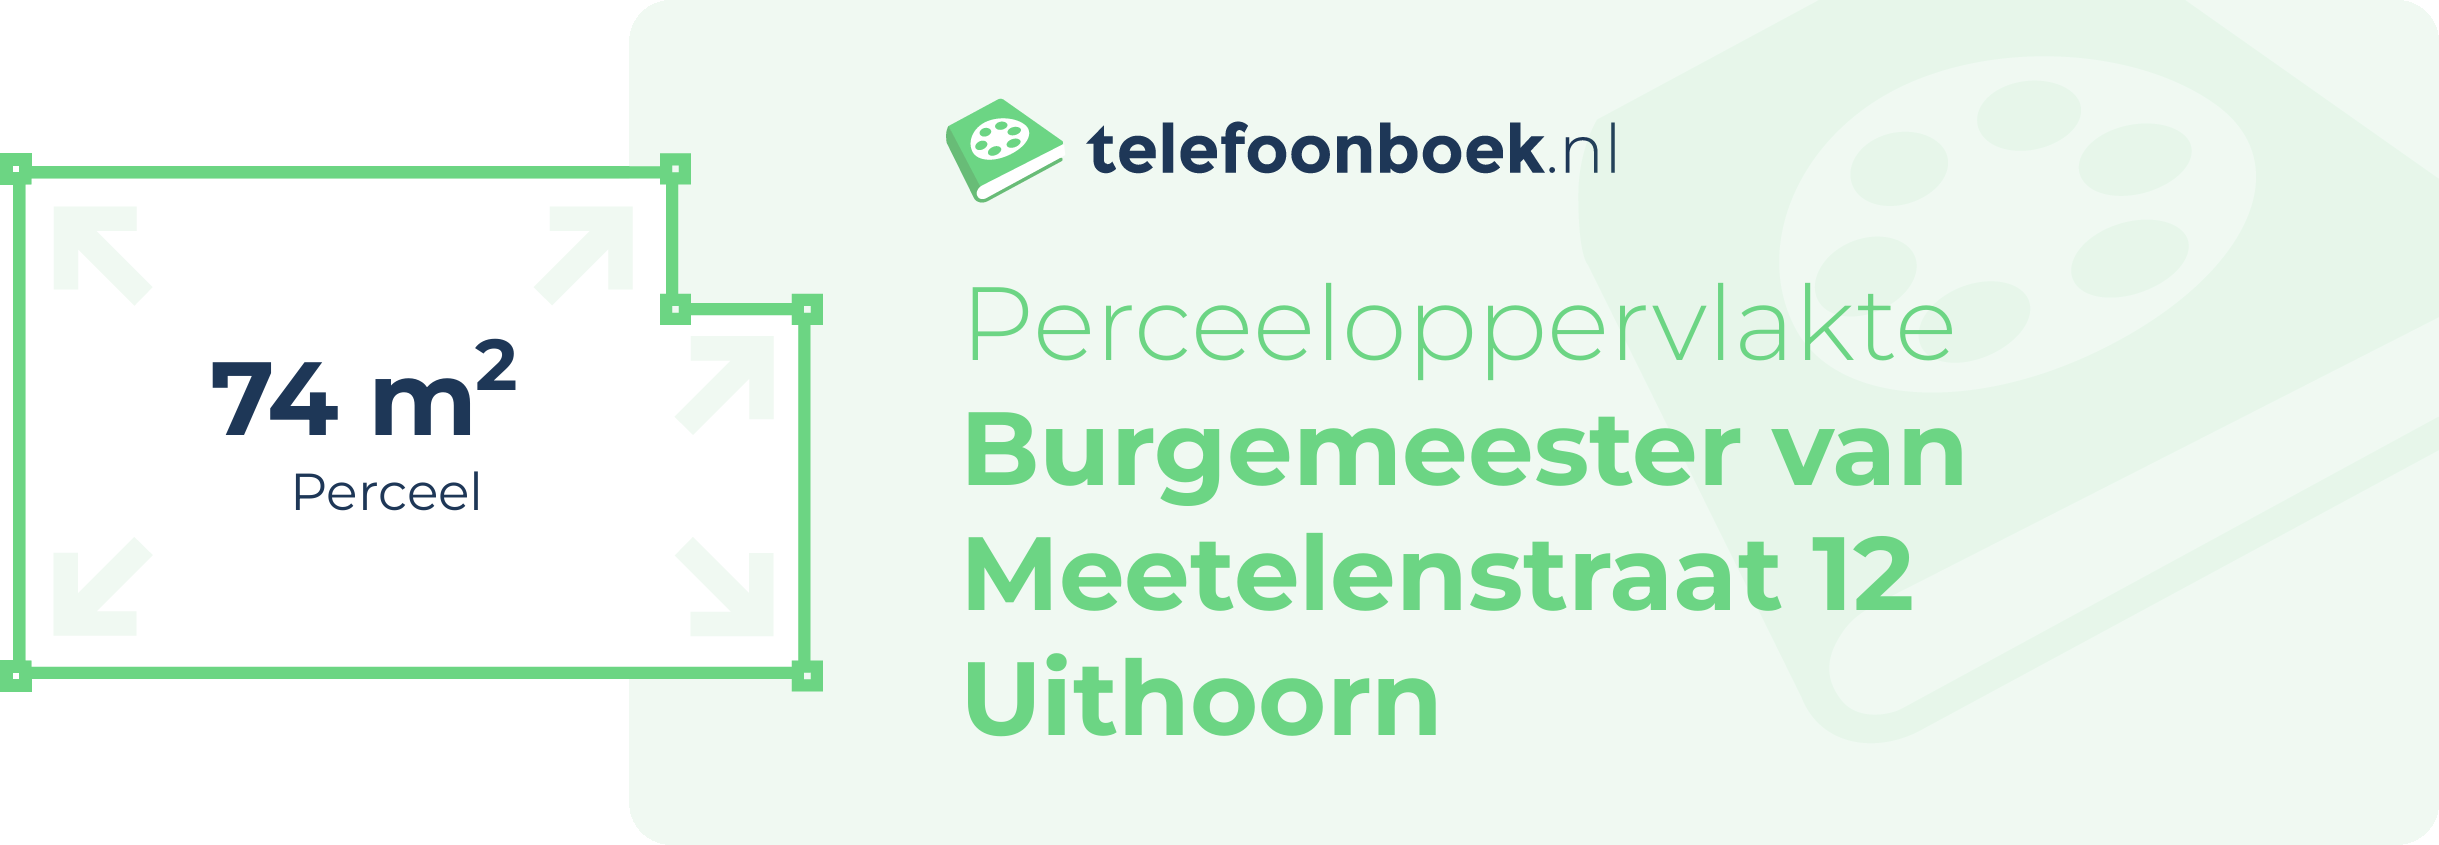 Perceeloppervlakte Burgemeester Van Meetelenstraat 12 Uithoorn